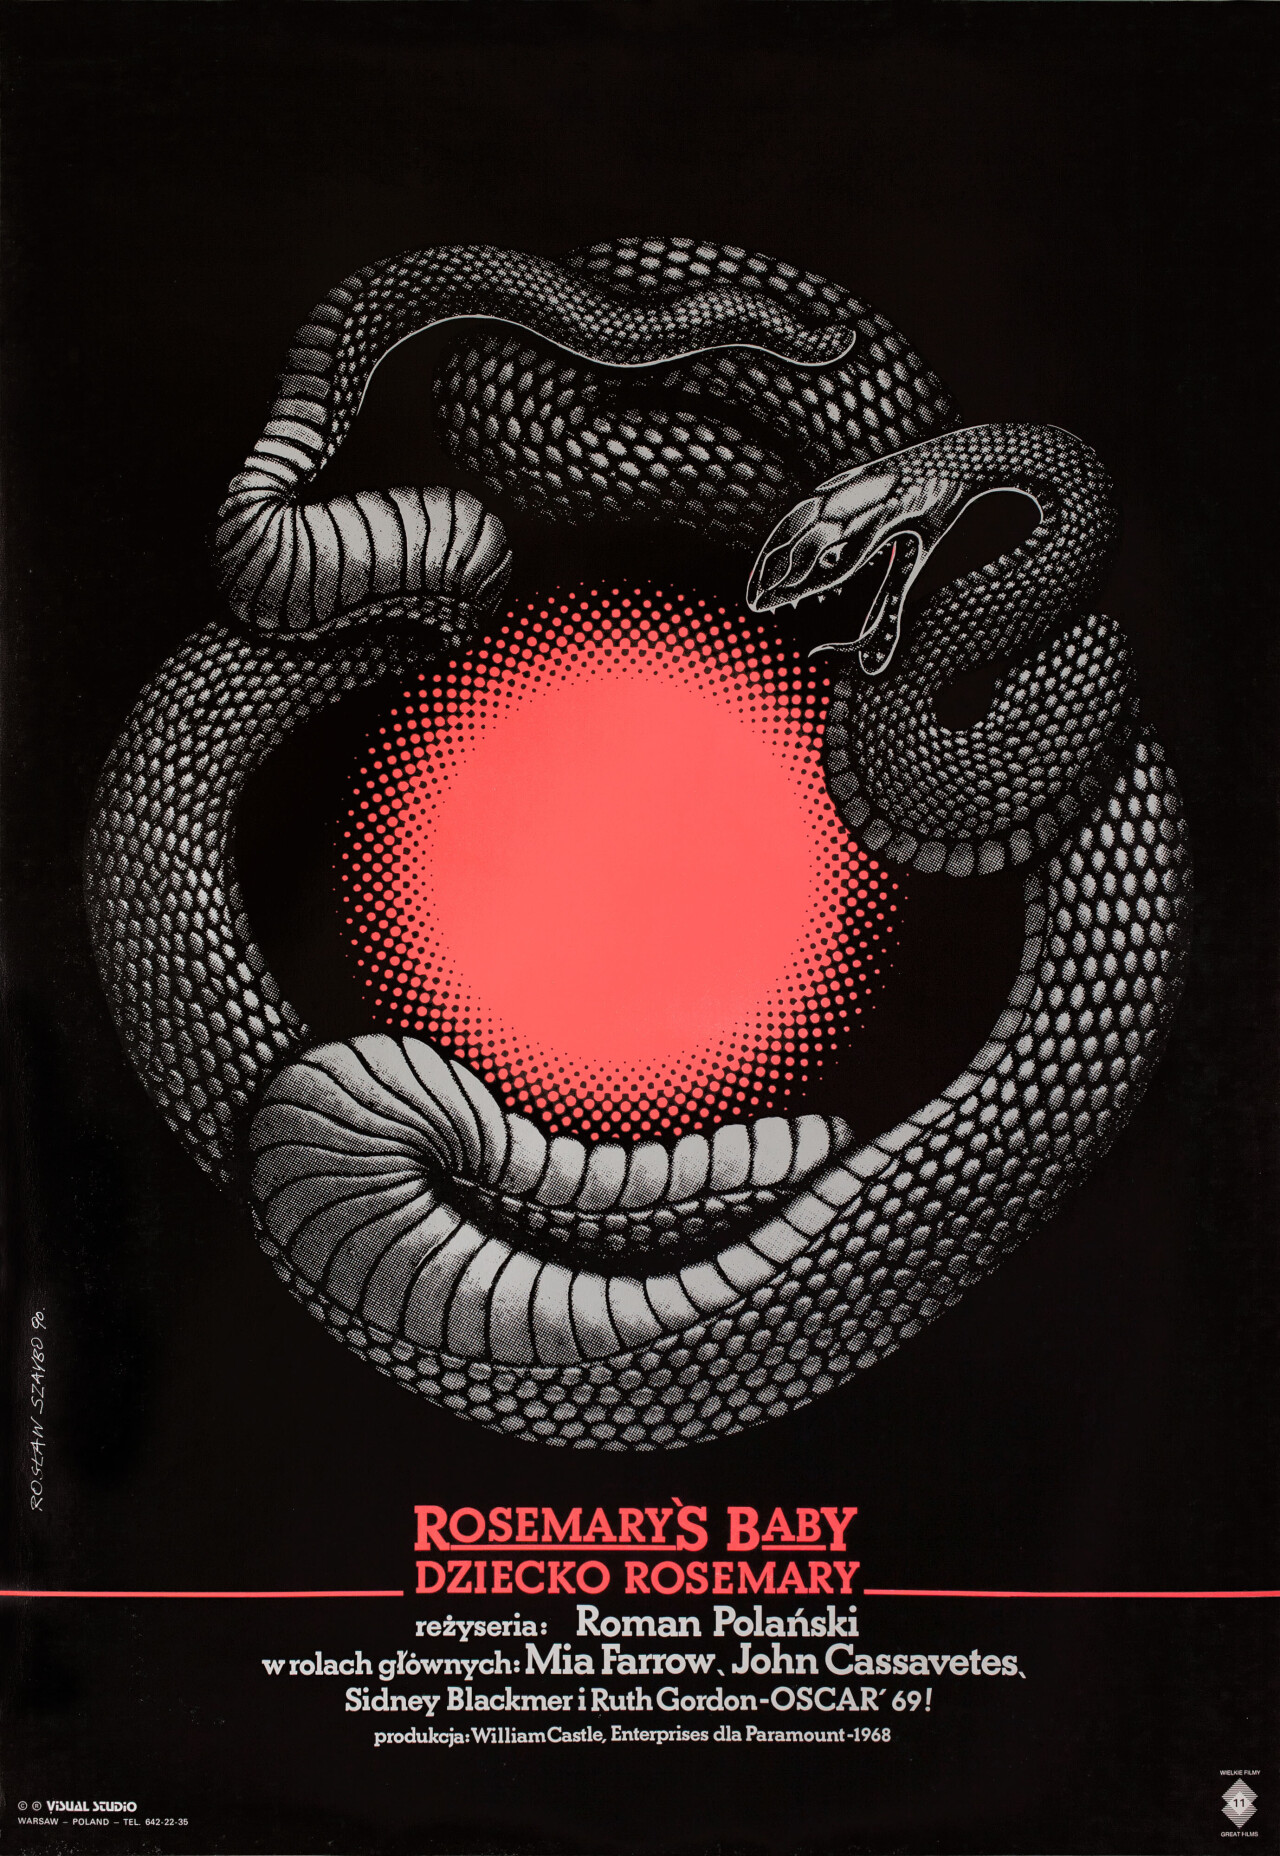 Ребенок Розмари (Rosemarys Baby, 1968), режиссёр Роман Полански, польский постер к фильму, автор Рослав Шайбо (ужасы, 1990 год)